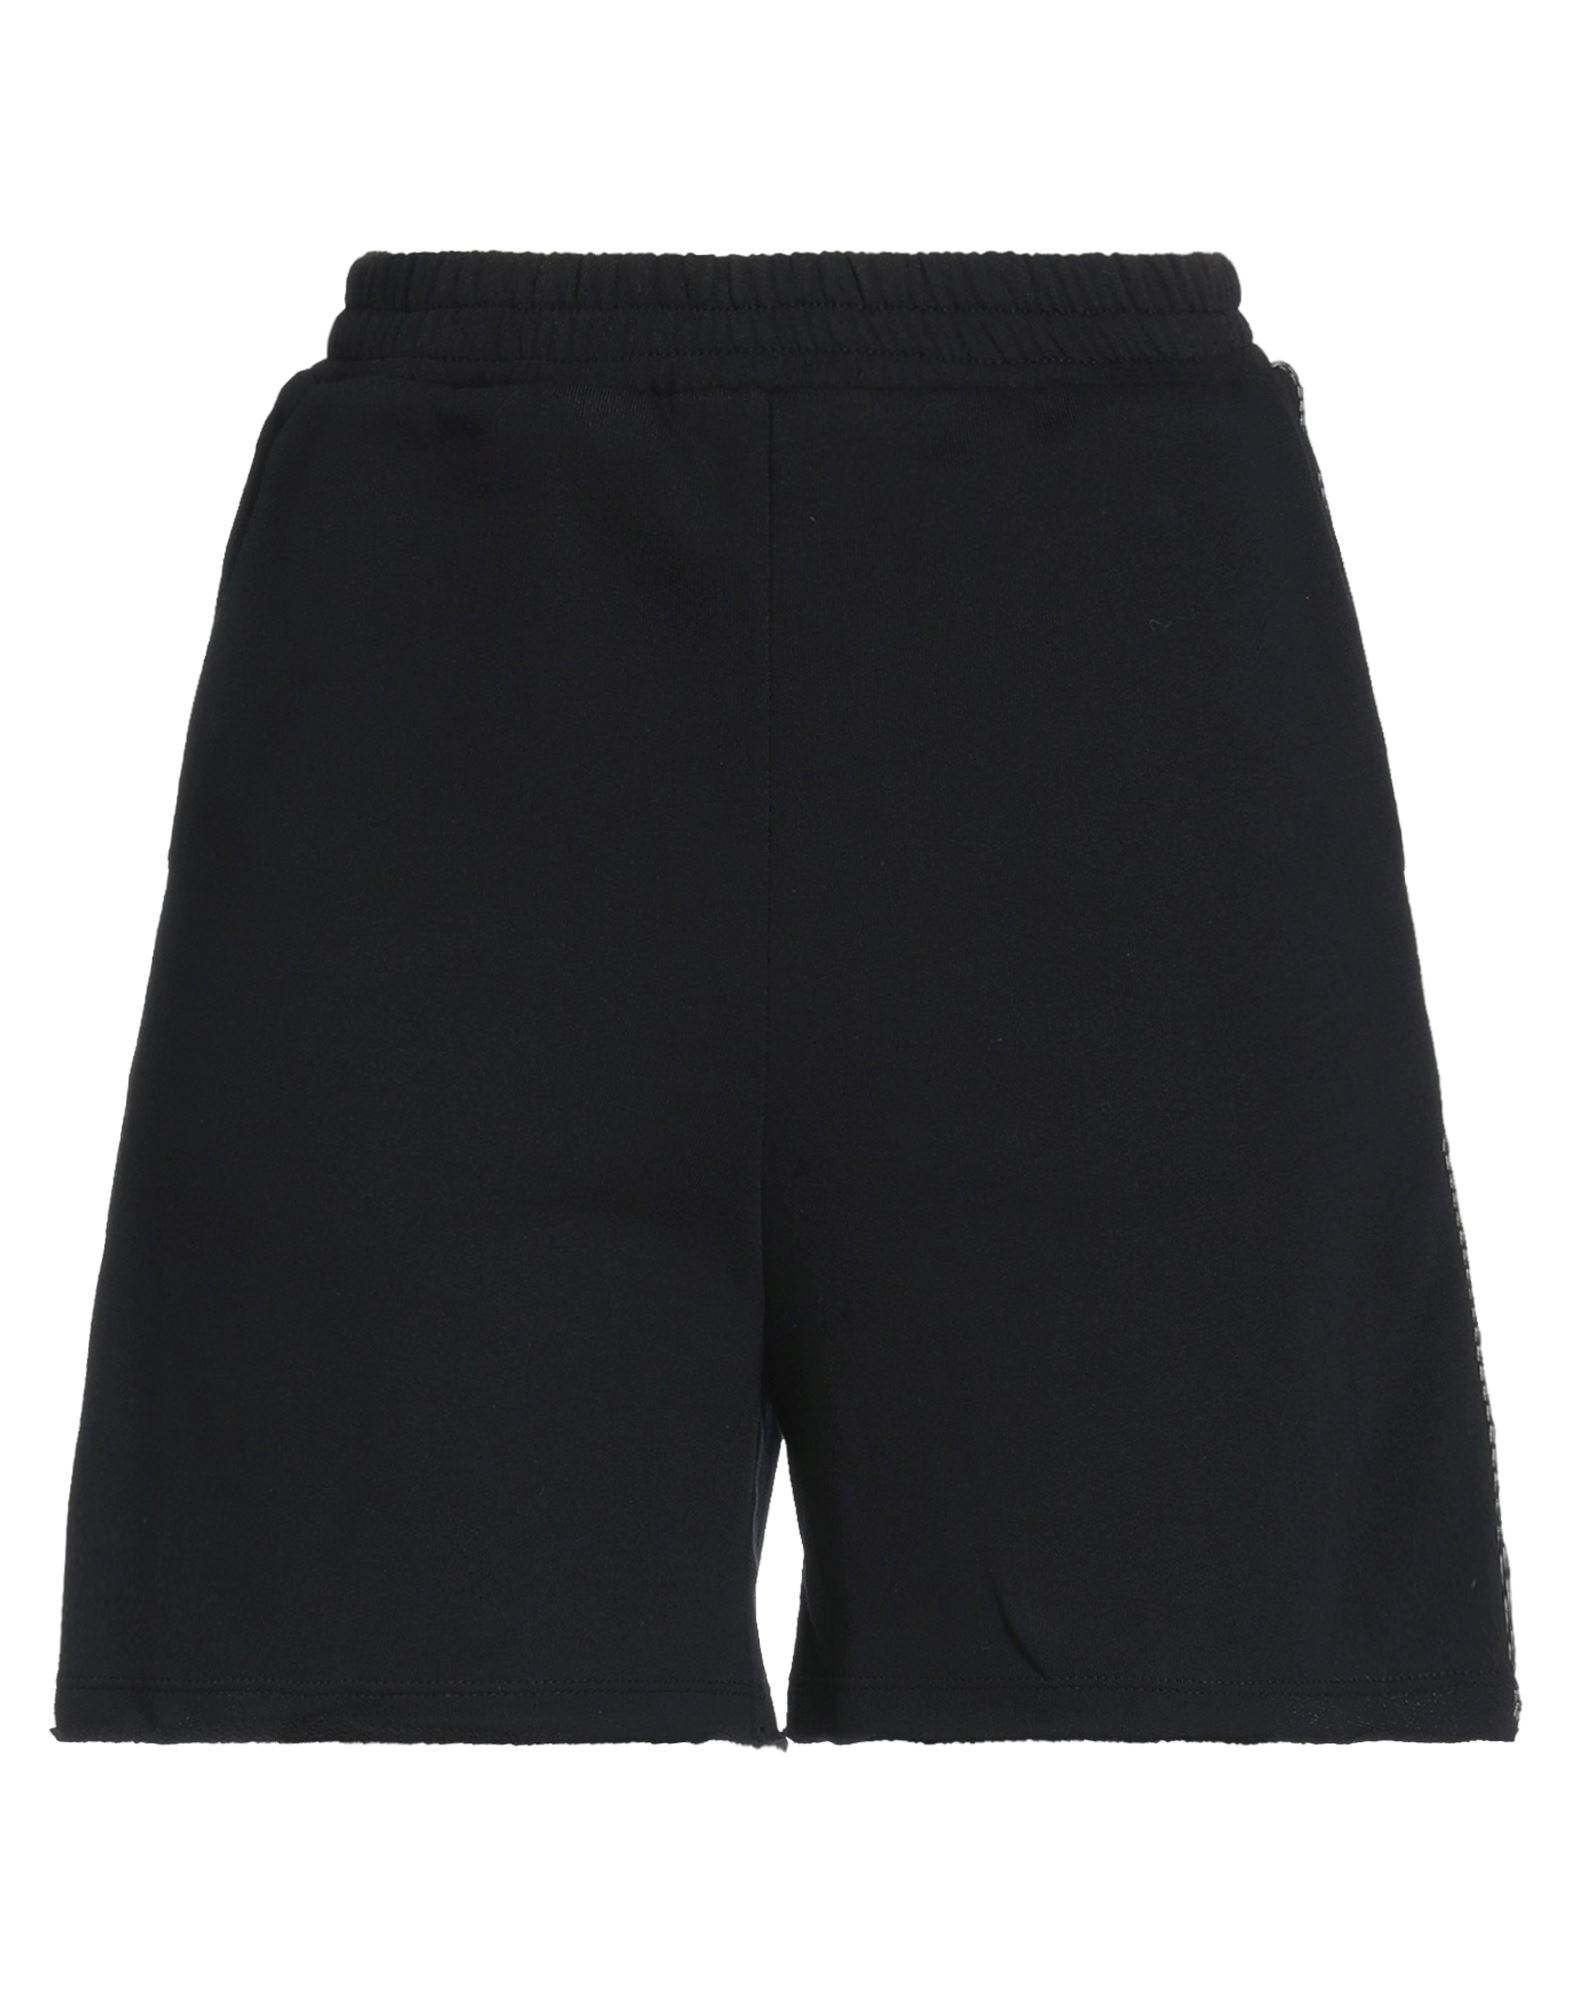 Jijil Woman Shorts & Bermuda Shorts Black Size 6 Cotton